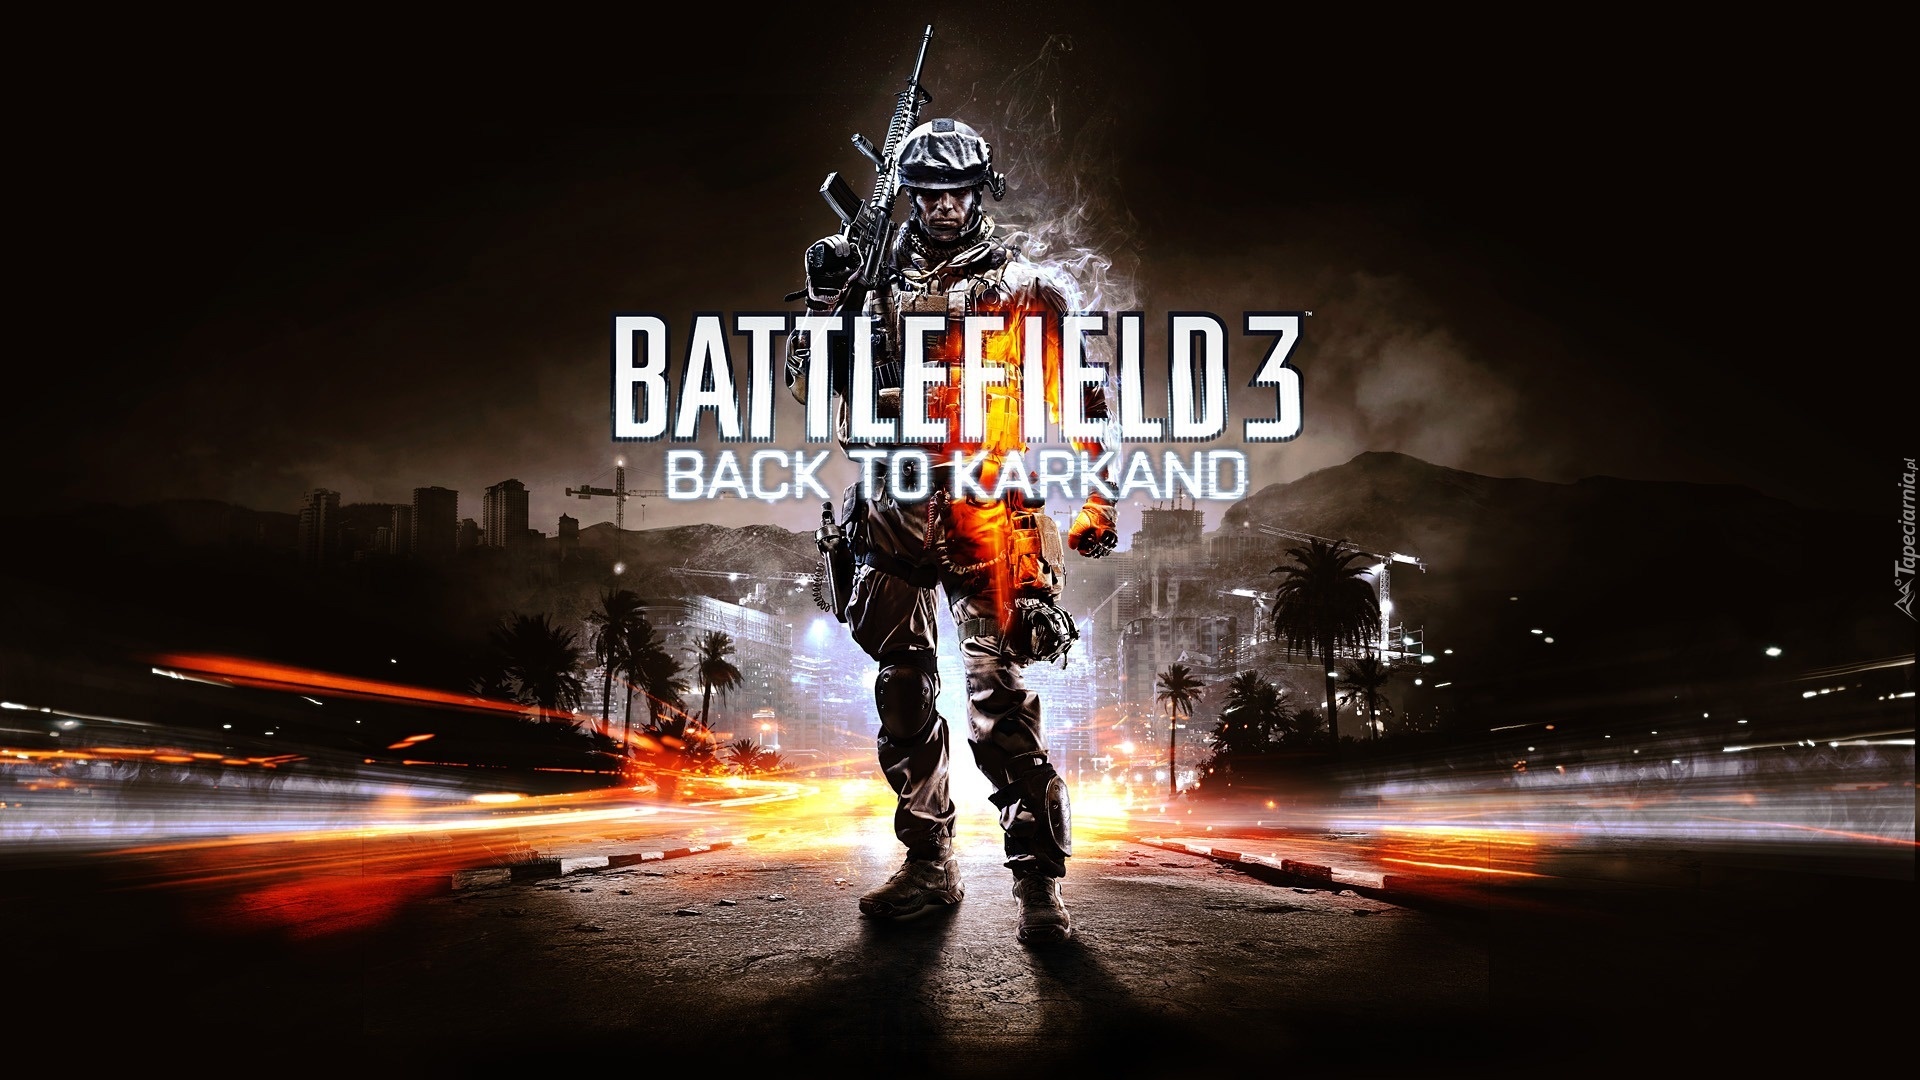 Battlefield 3, Żołnierz